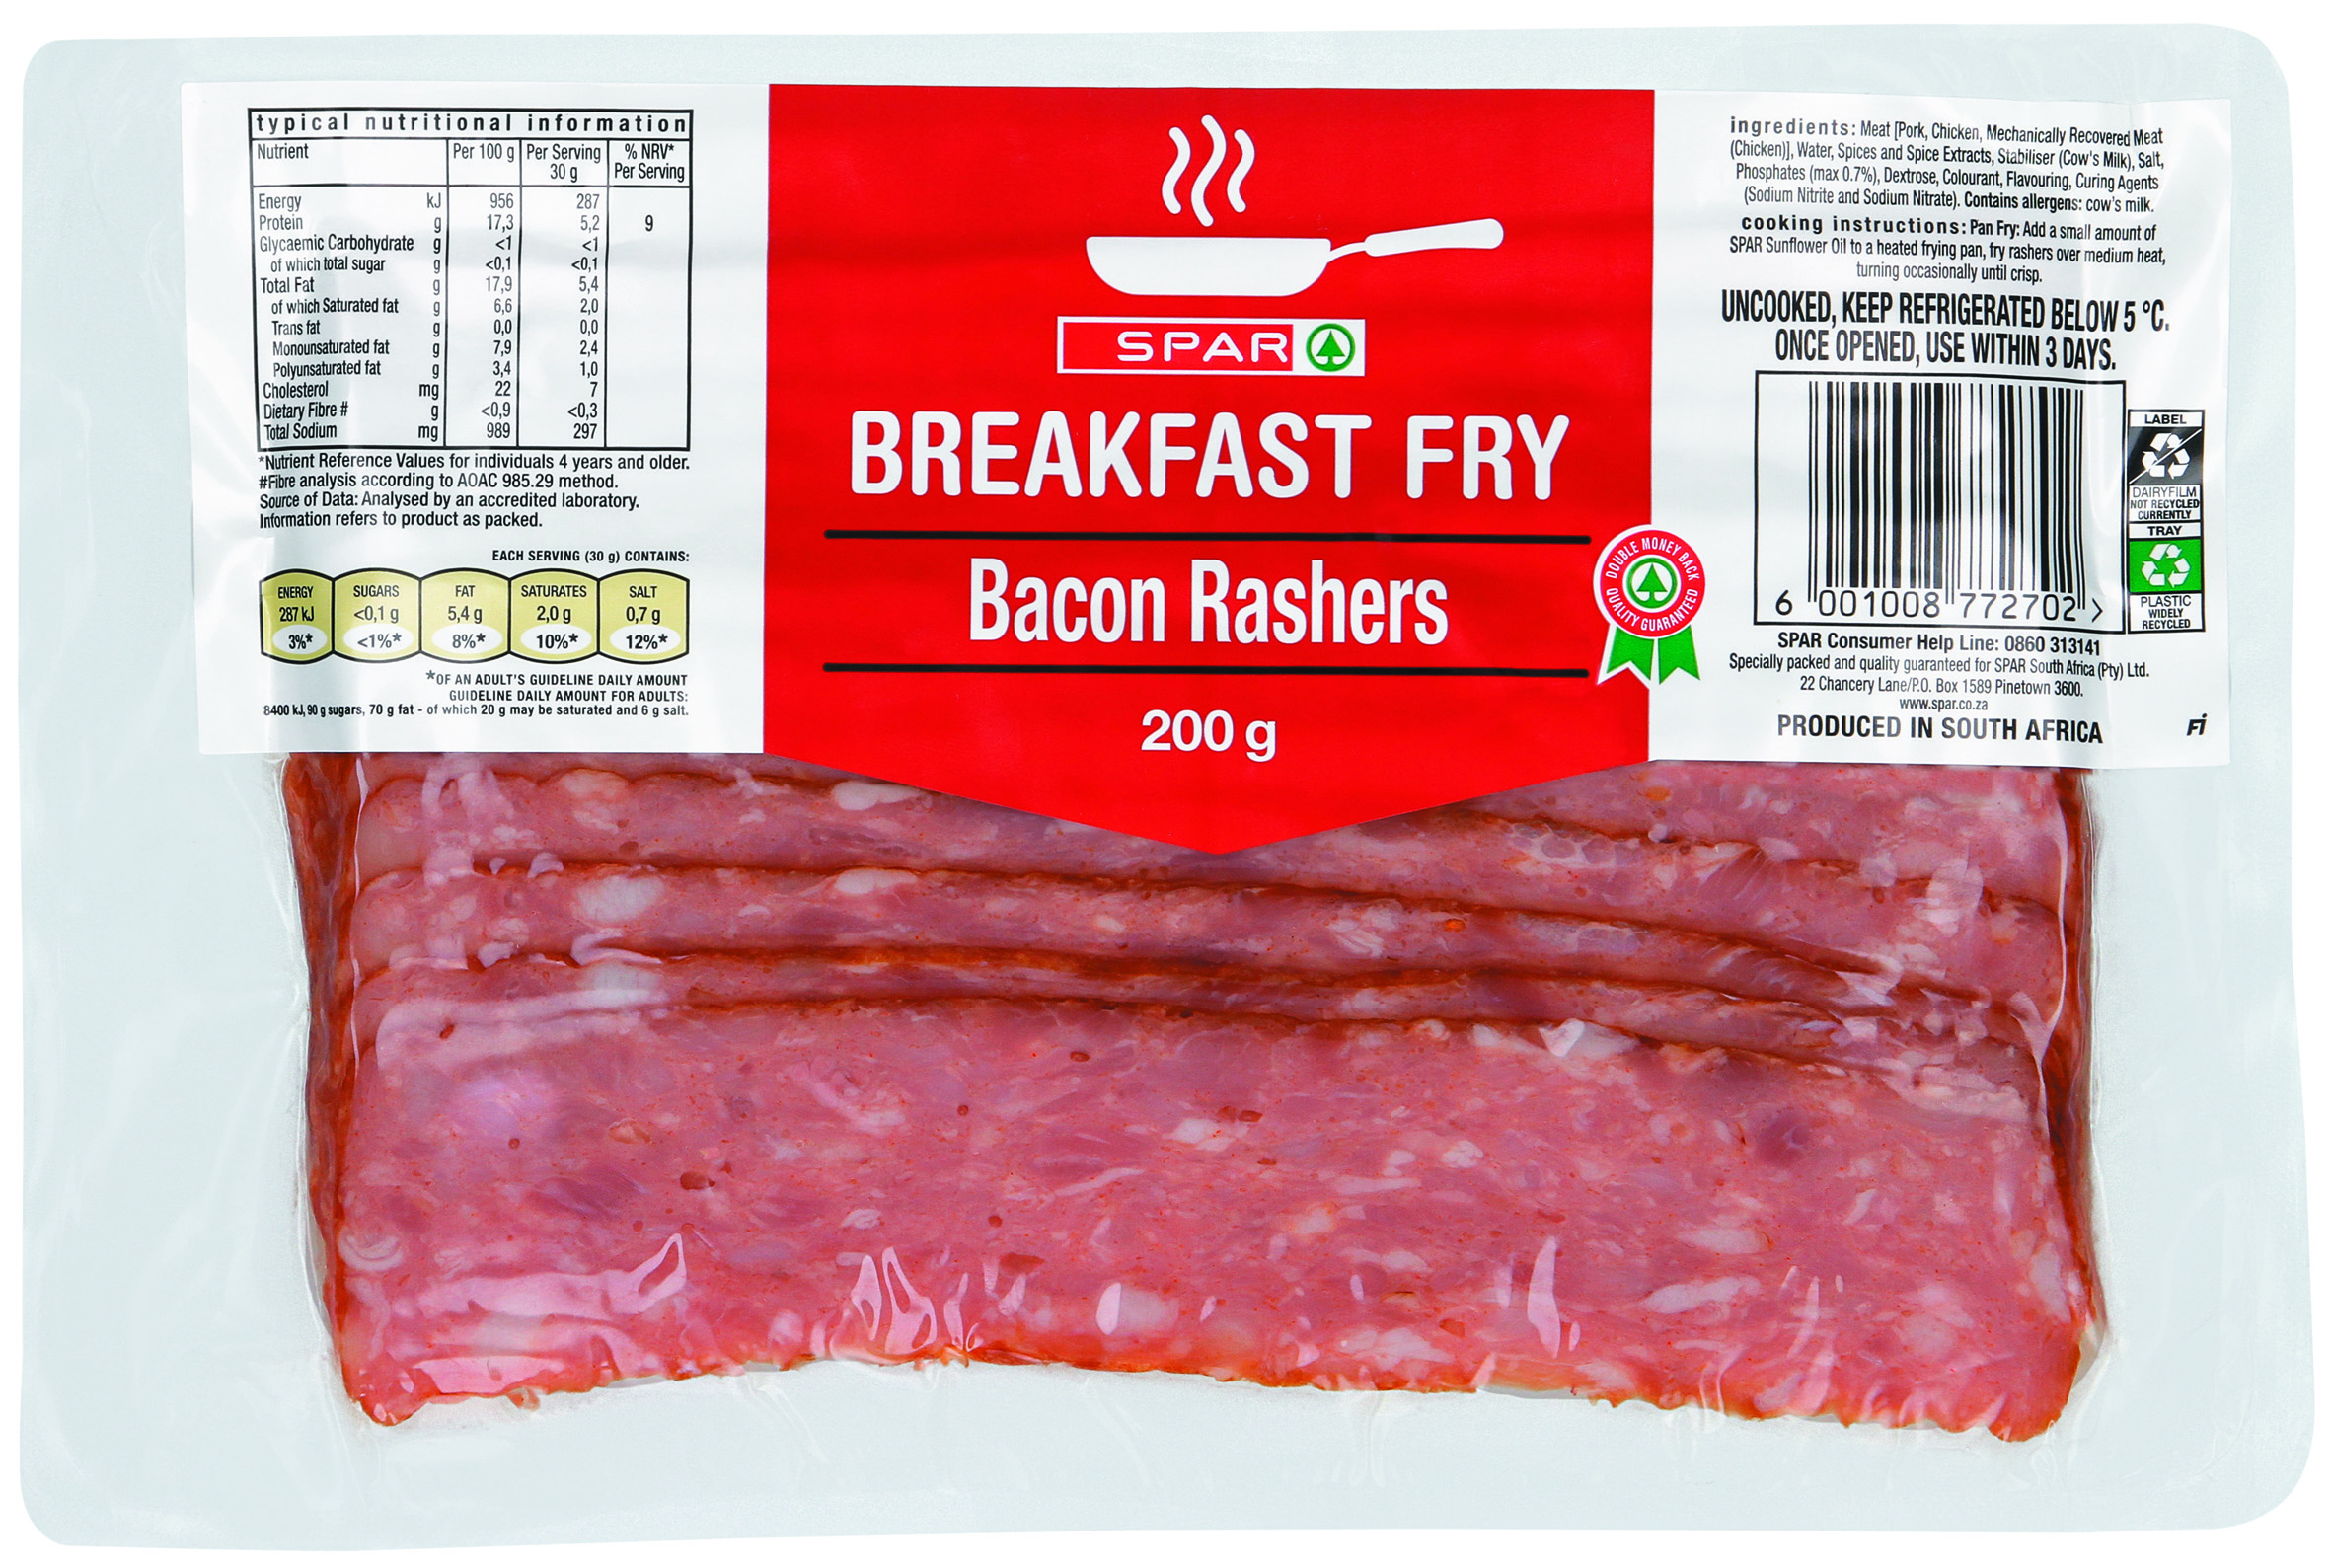 breakfast fry - bacon rashers